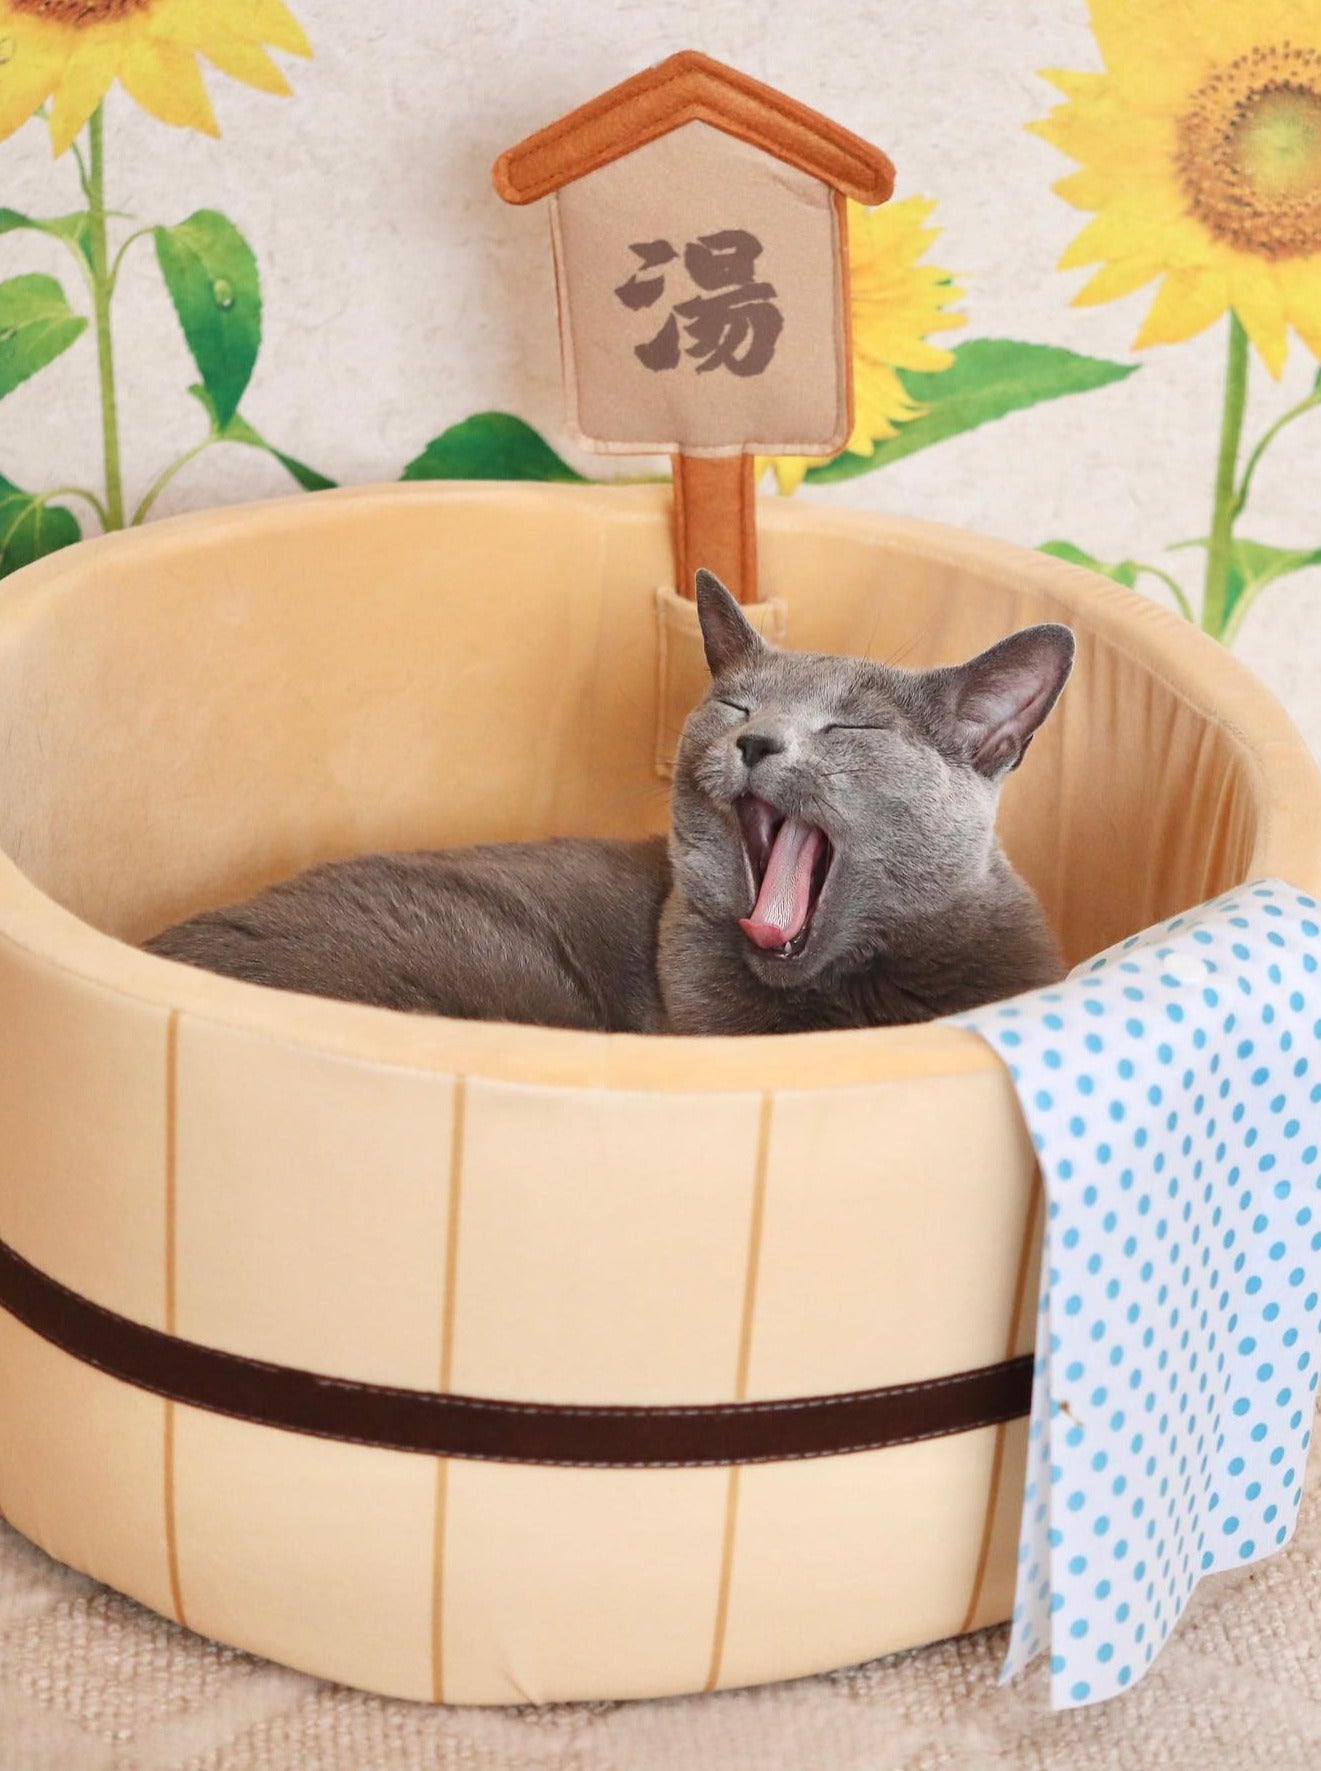 いい湯だな風呂桶型猫ベッド - MOFUCAT